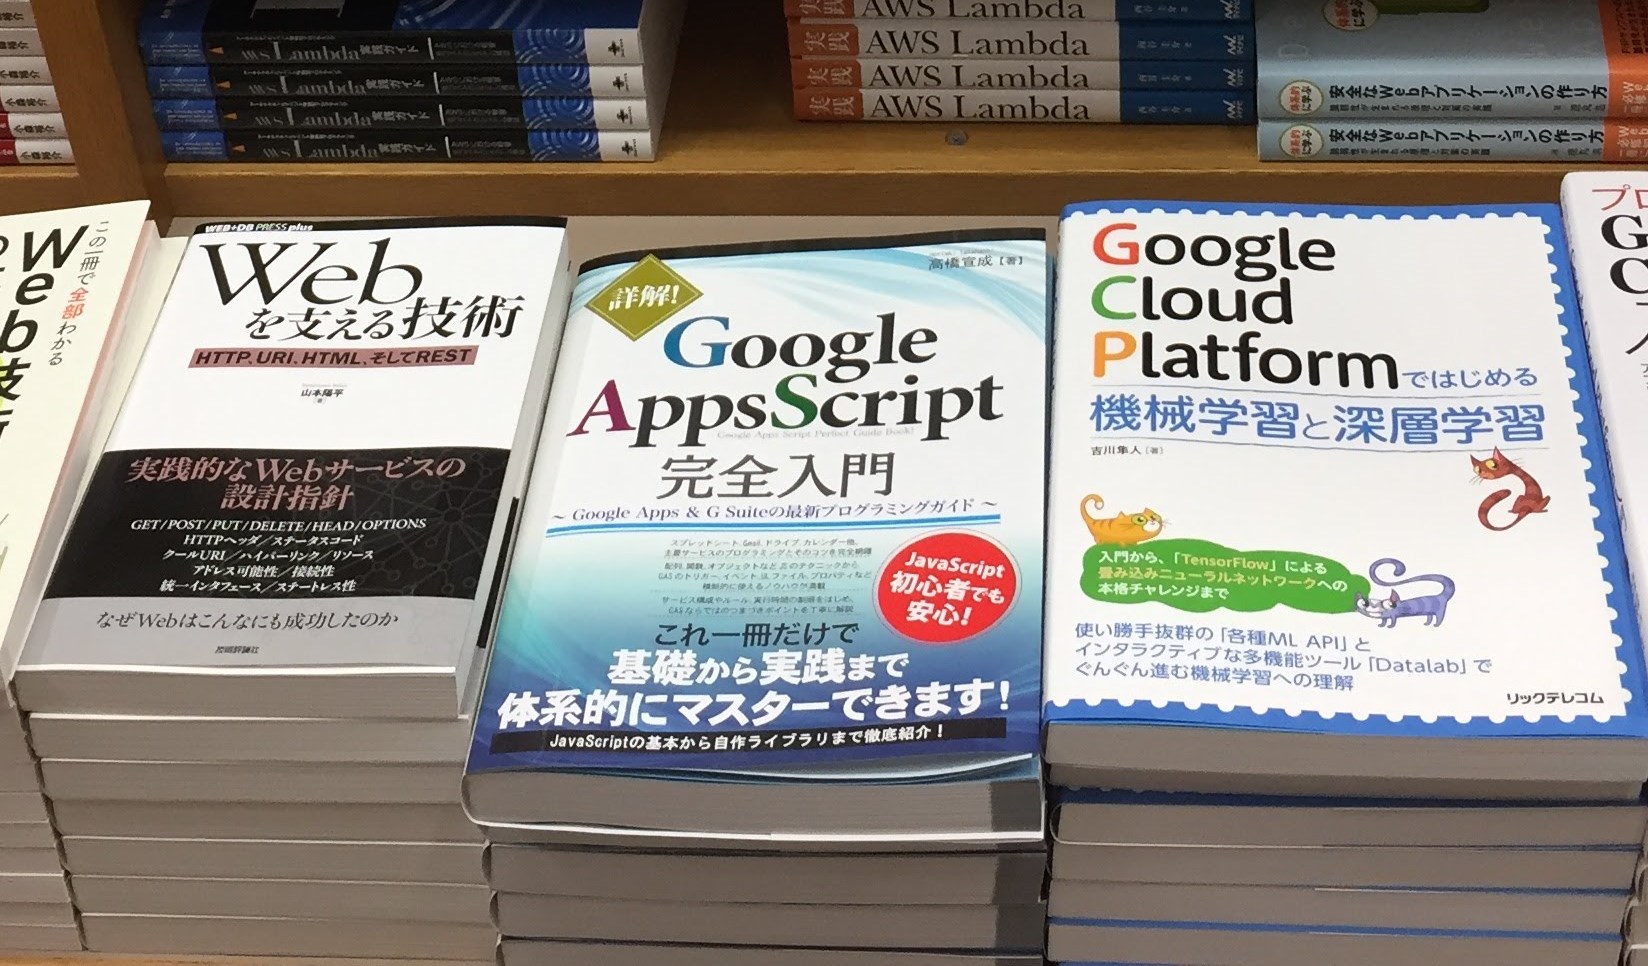 紀伊國屋書店新宿本店 Google Apps Script完全入門